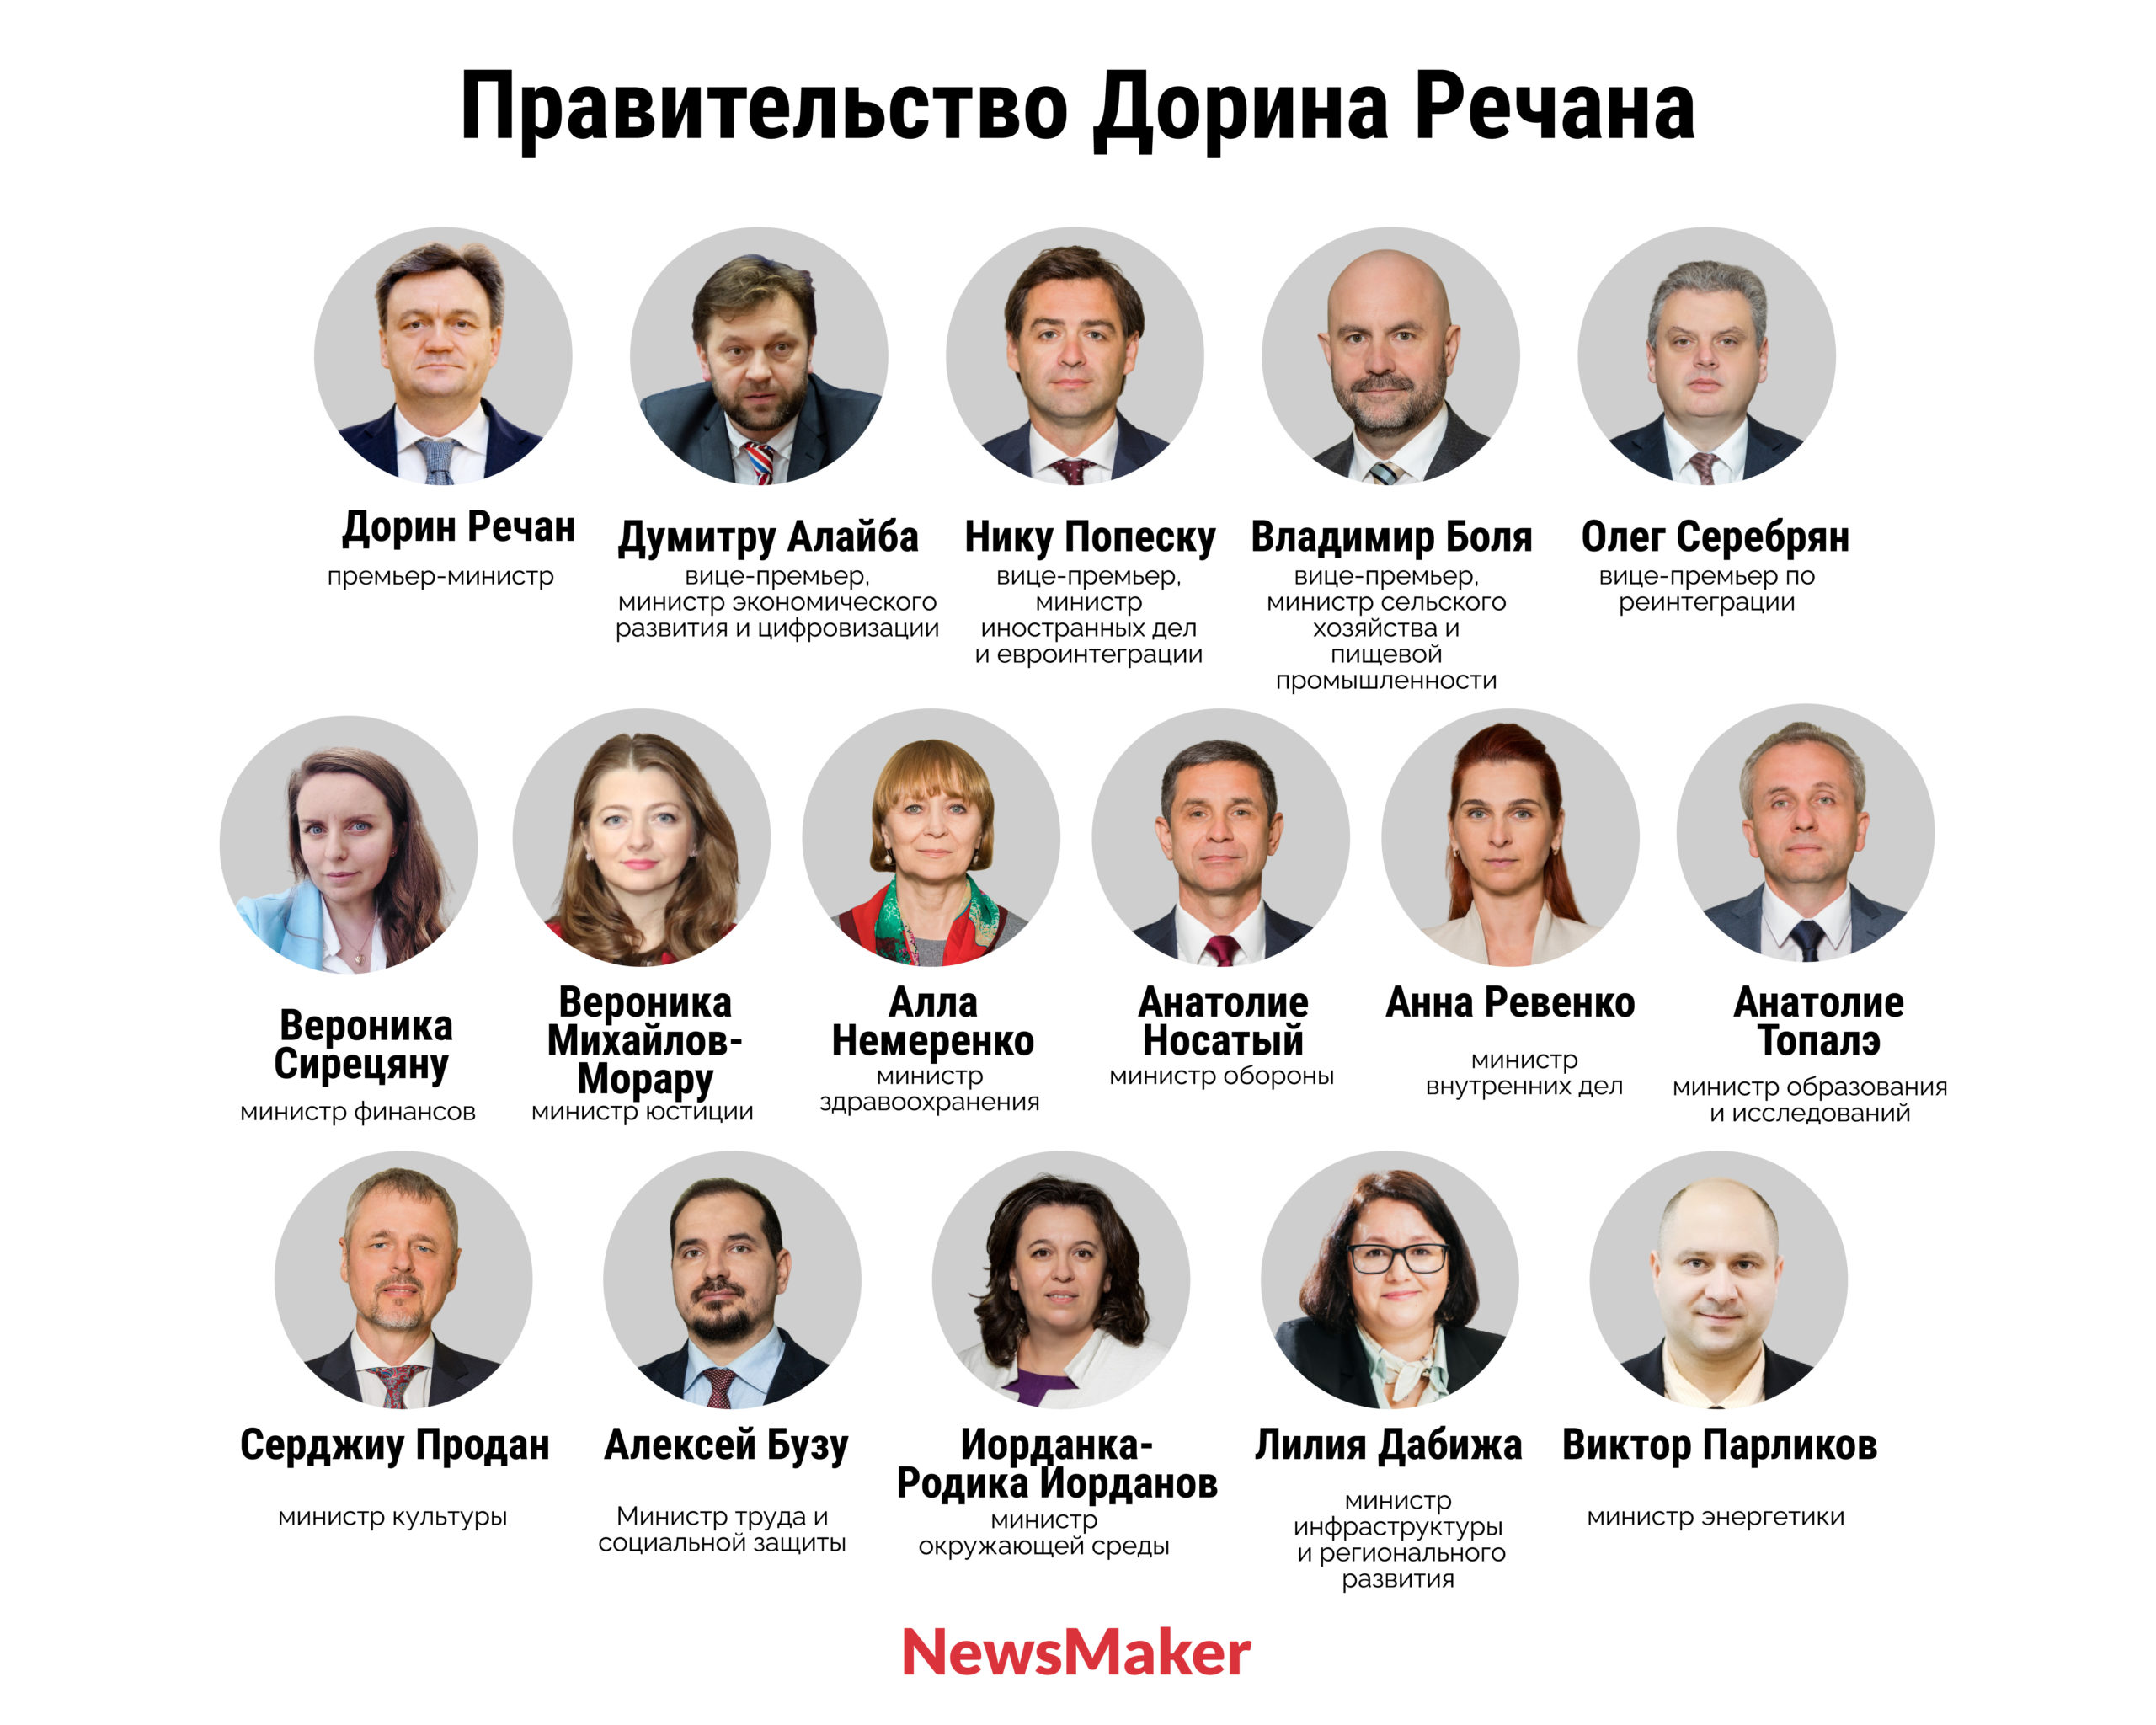 Состав нового правительства Молдовы в лицах. Кто есть кто в кабинете министров Дорина Речана